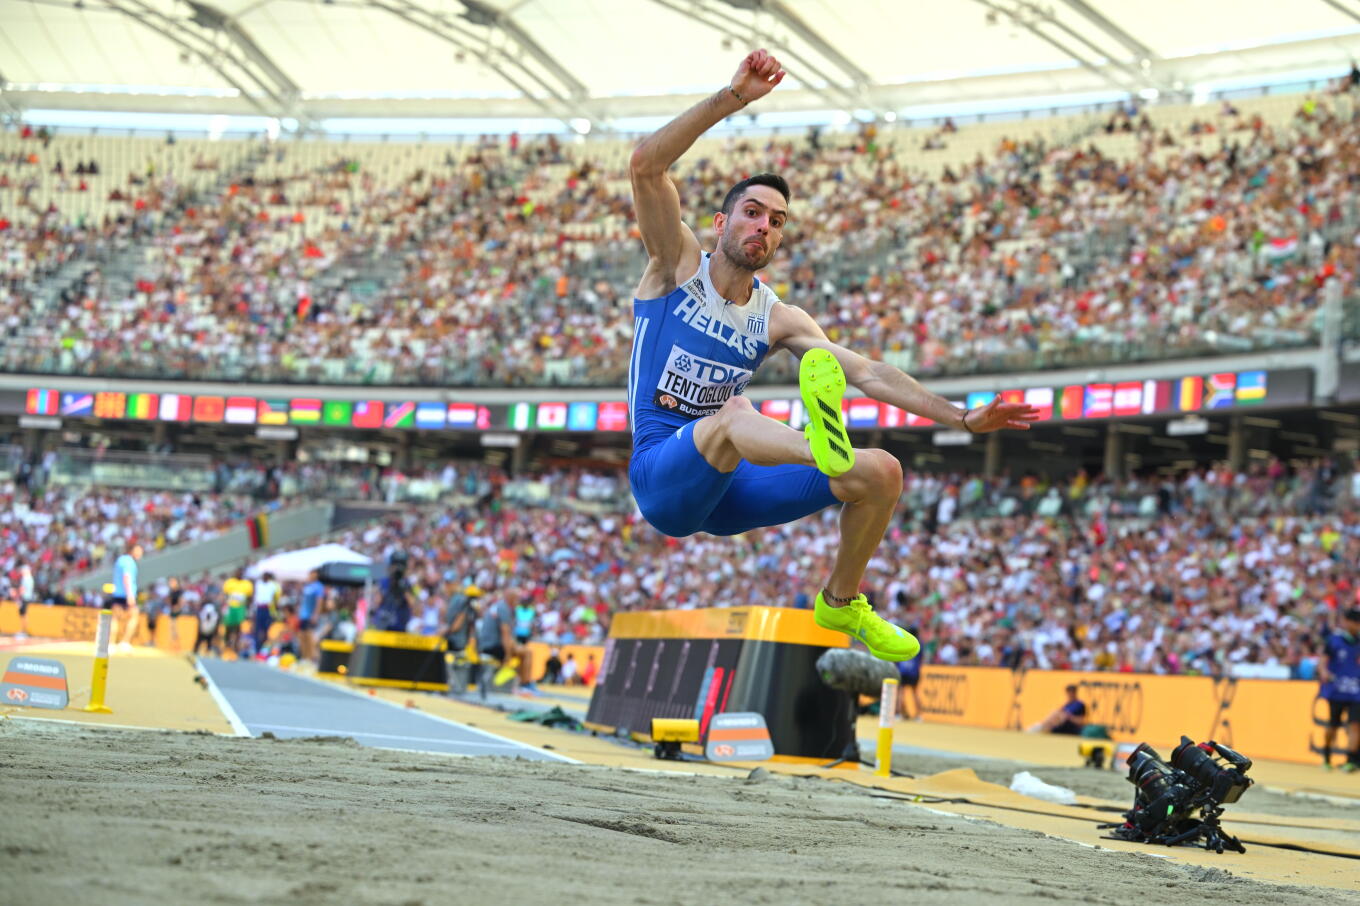 Παγκόσμιος πρωταθλητής ο Μίλτος Τεντόγλου με τελευταίο άλμα στα 8.52μ